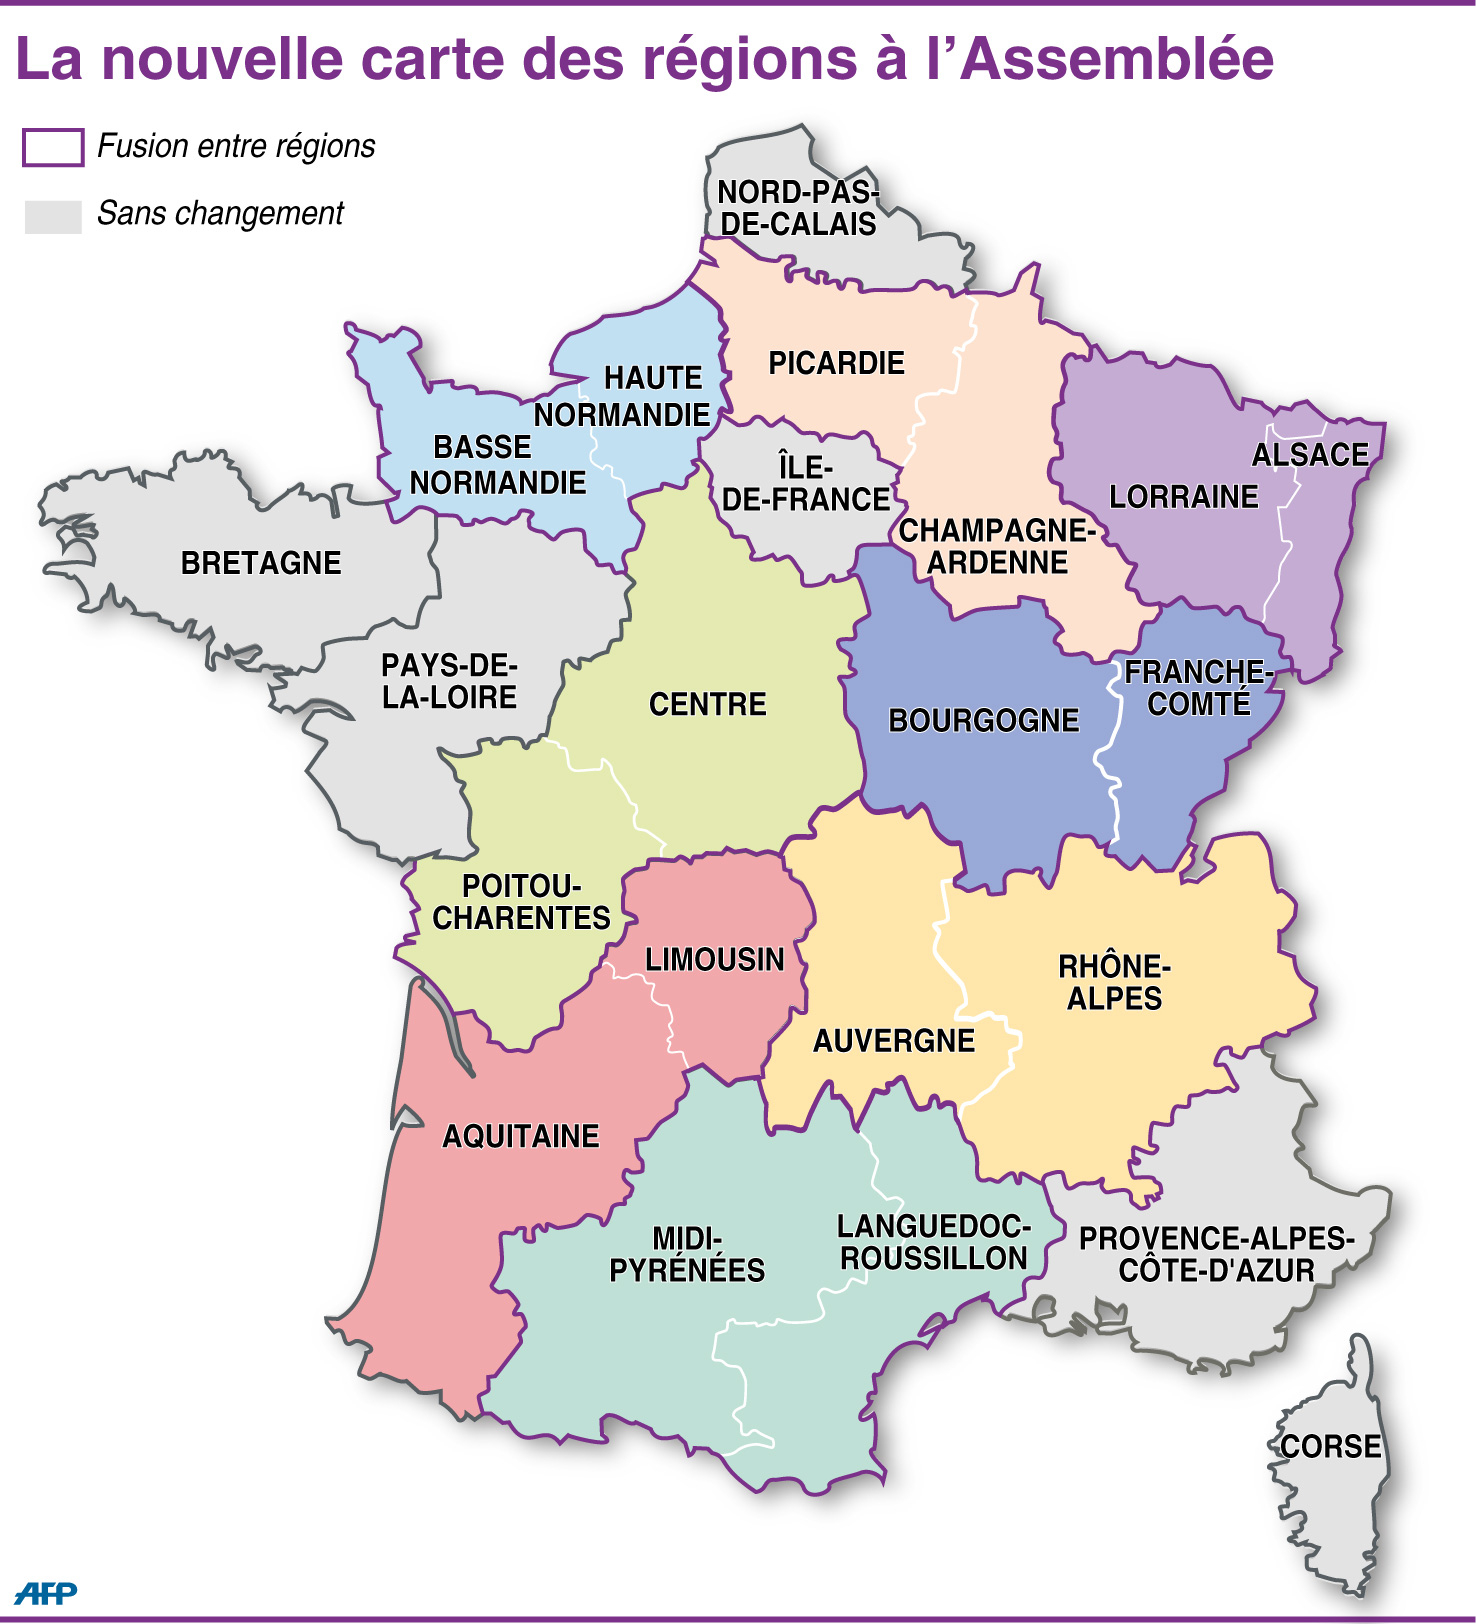 Réforme Territoriale : Les Députés Cherchent Le Consensus destiné Carte Région France 2017